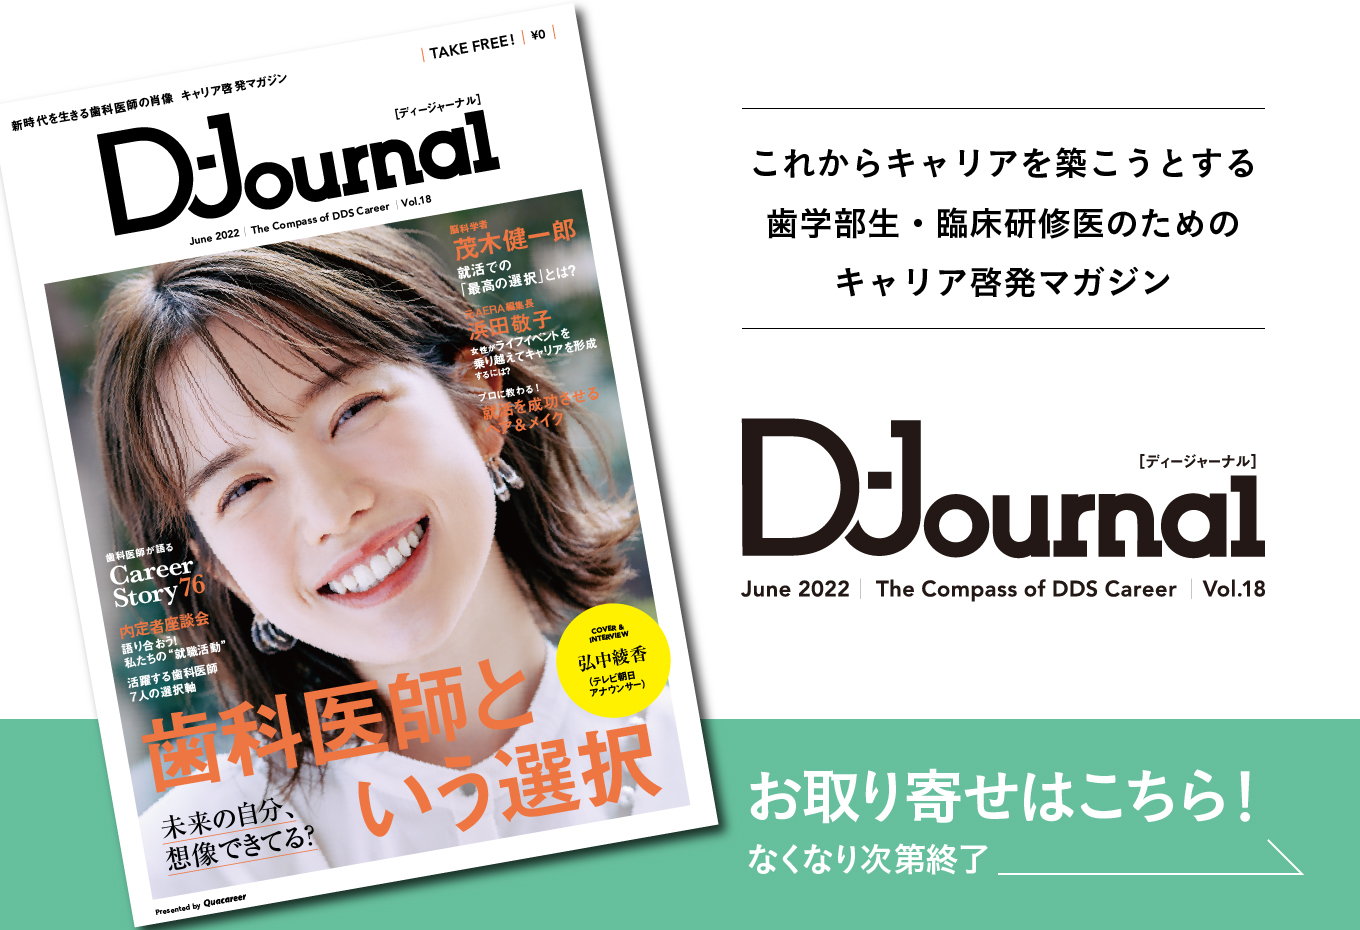 歯科医師キャリアマガジン「D-Journal」Vol.18